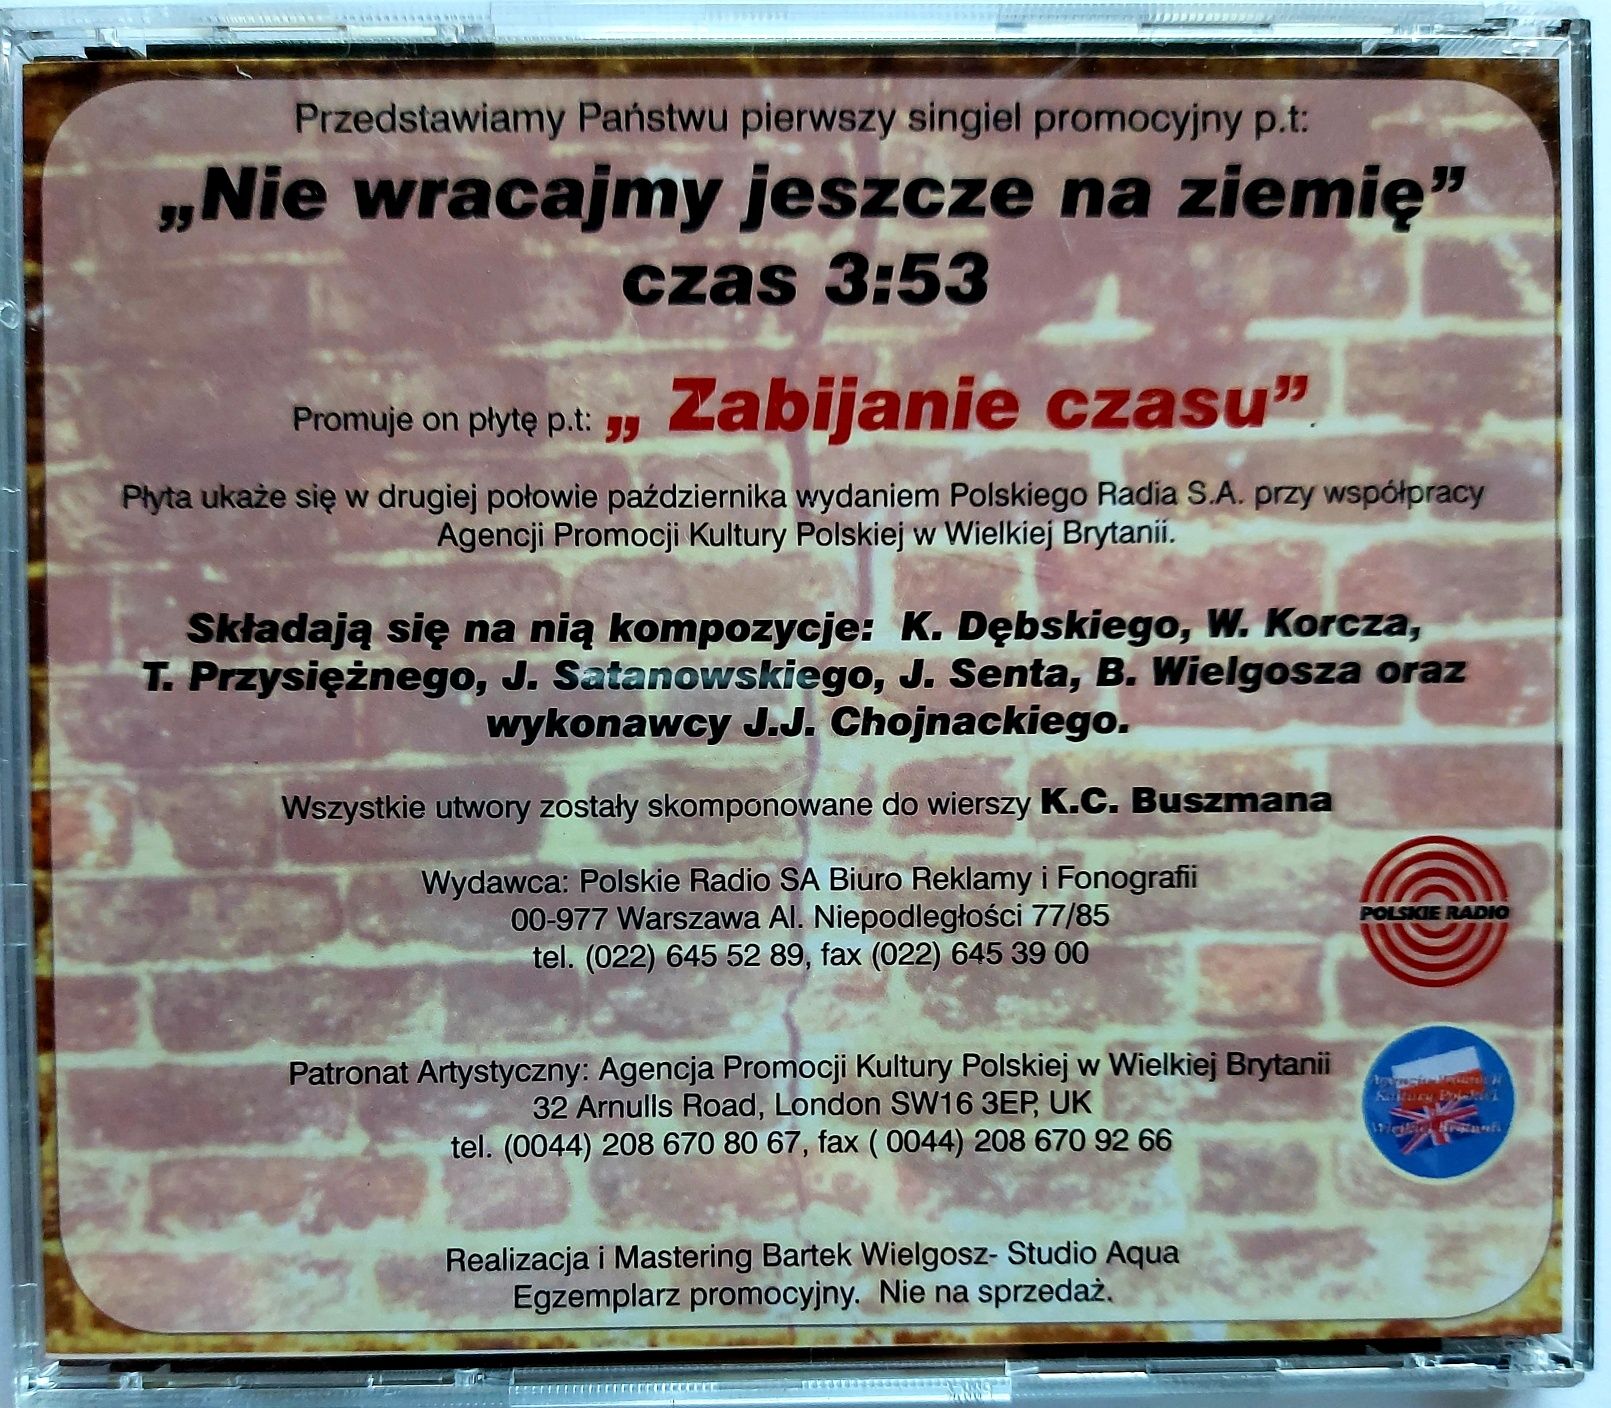 CDs Jarosław Jar Chojnacki Nie Wracajmy Jeszcze Na Ziemię 2003r